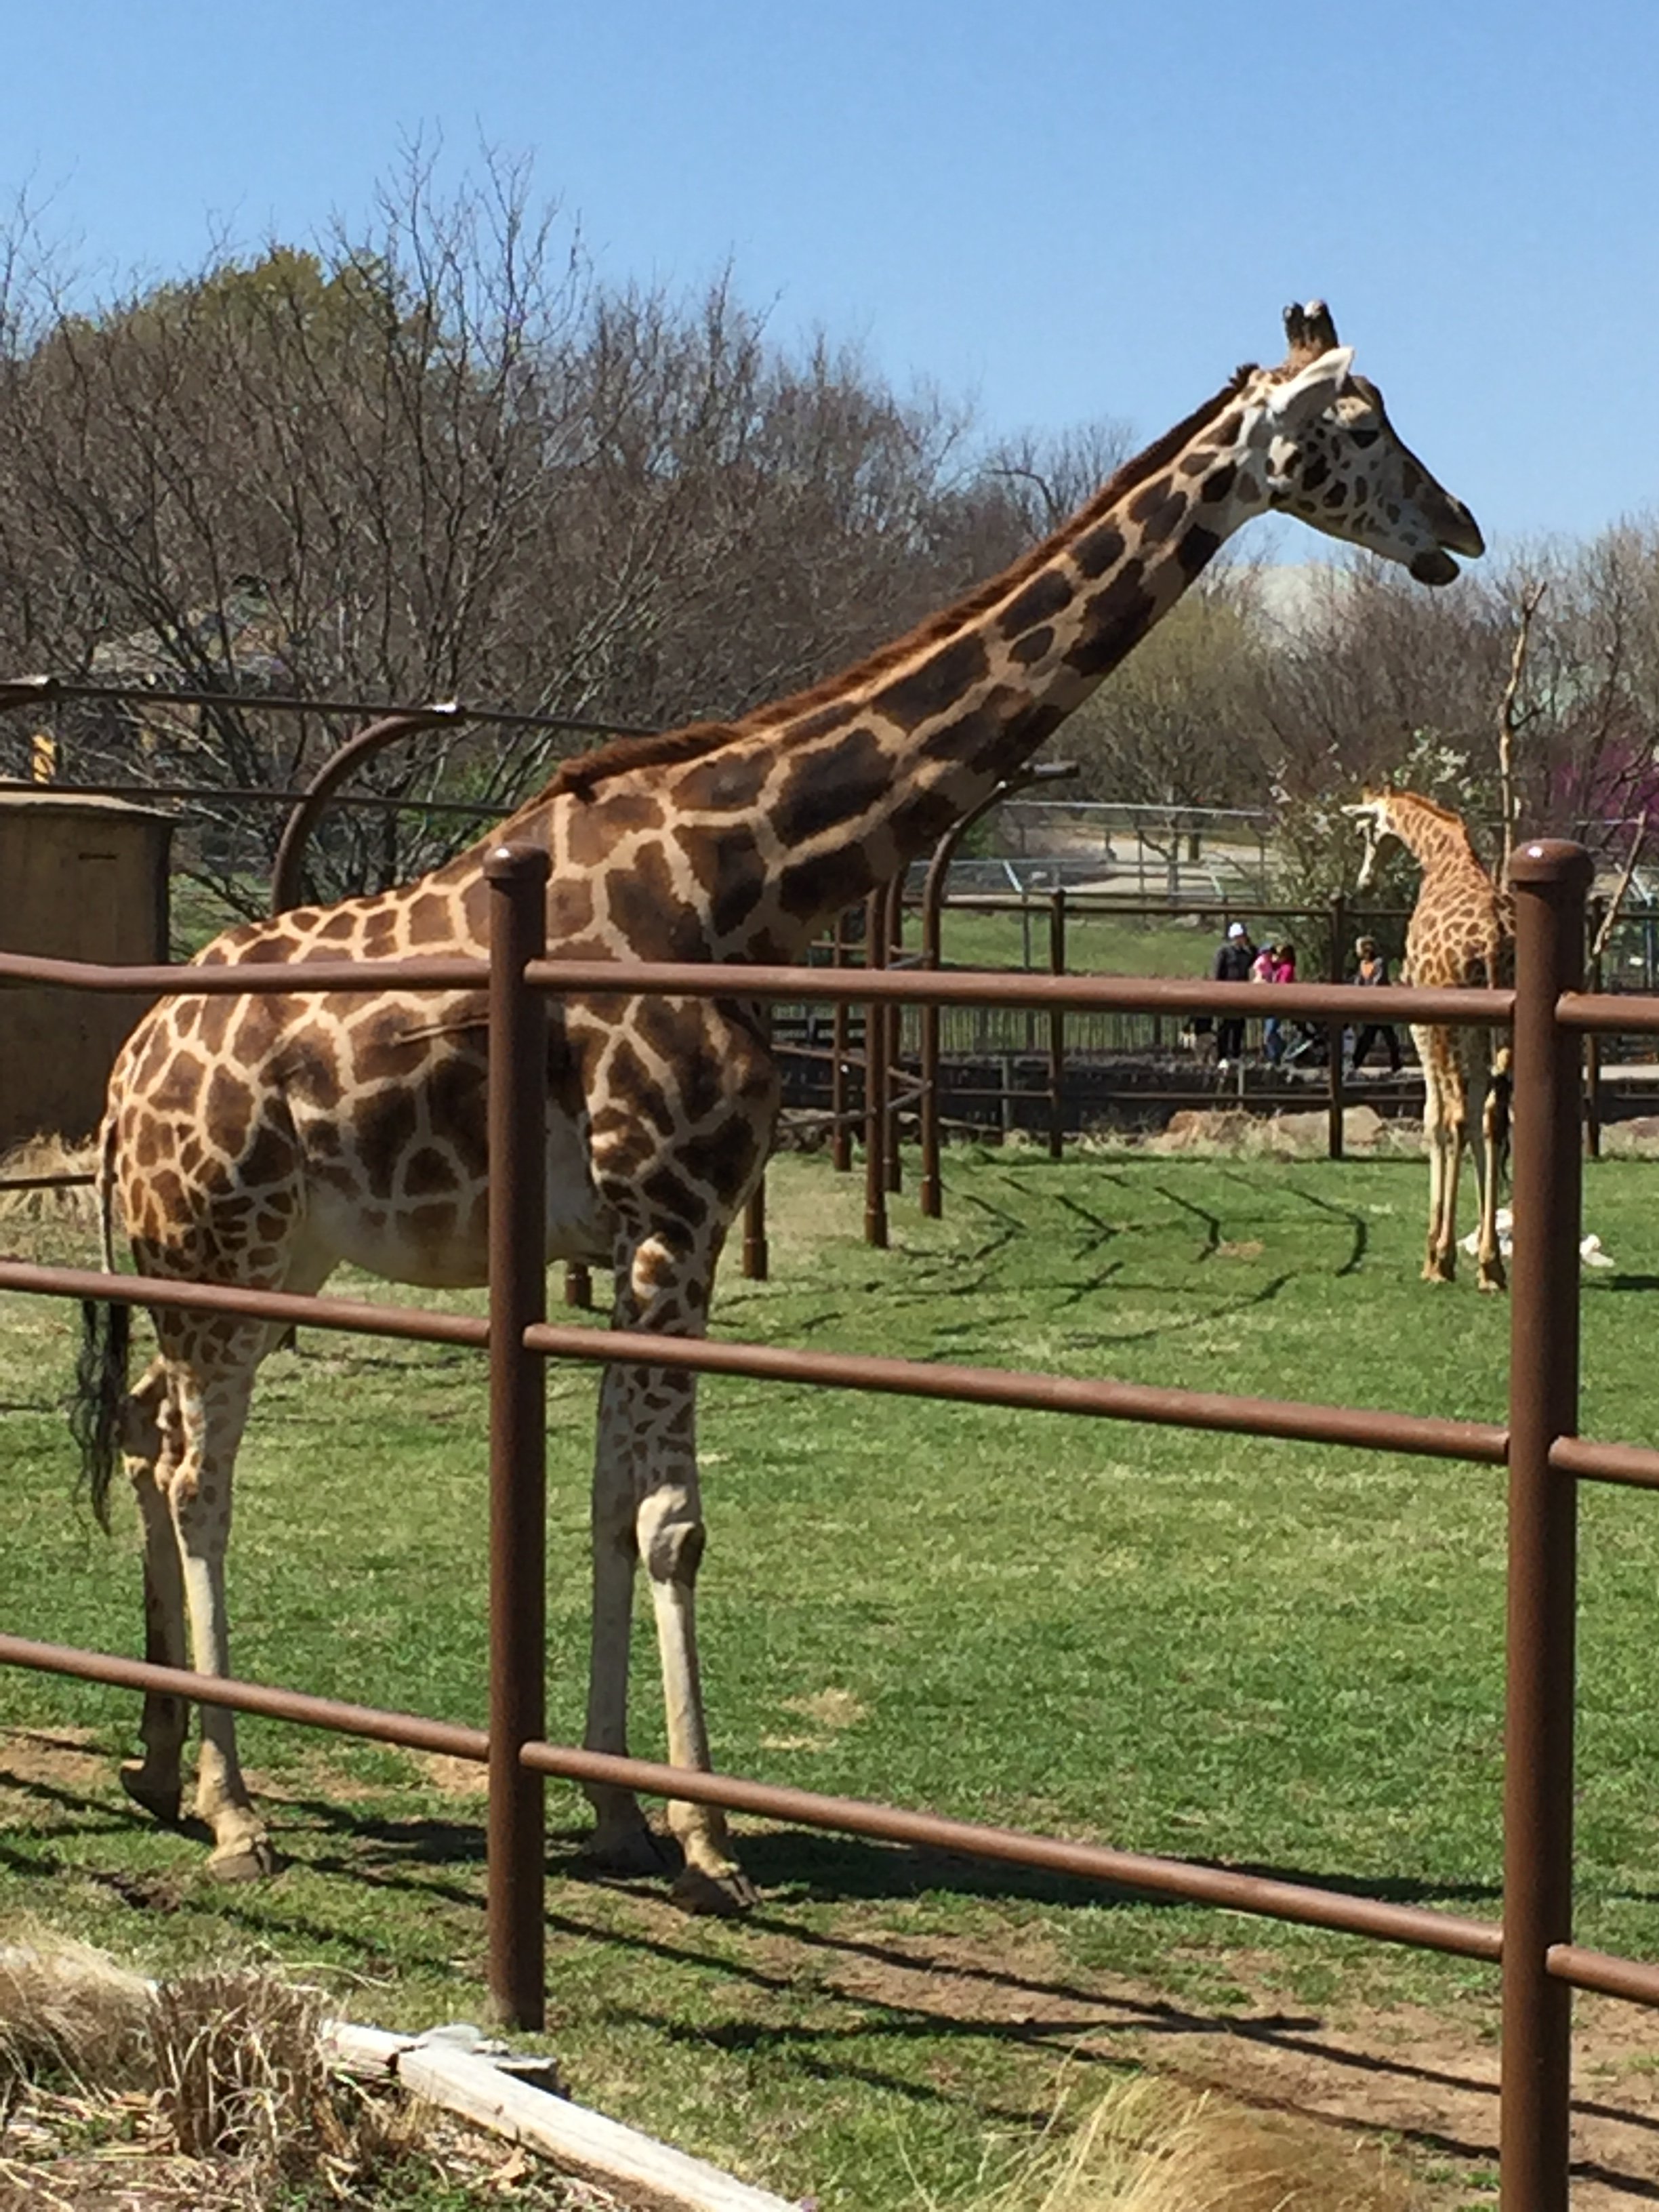 Giraffe at Tulsa Zoo